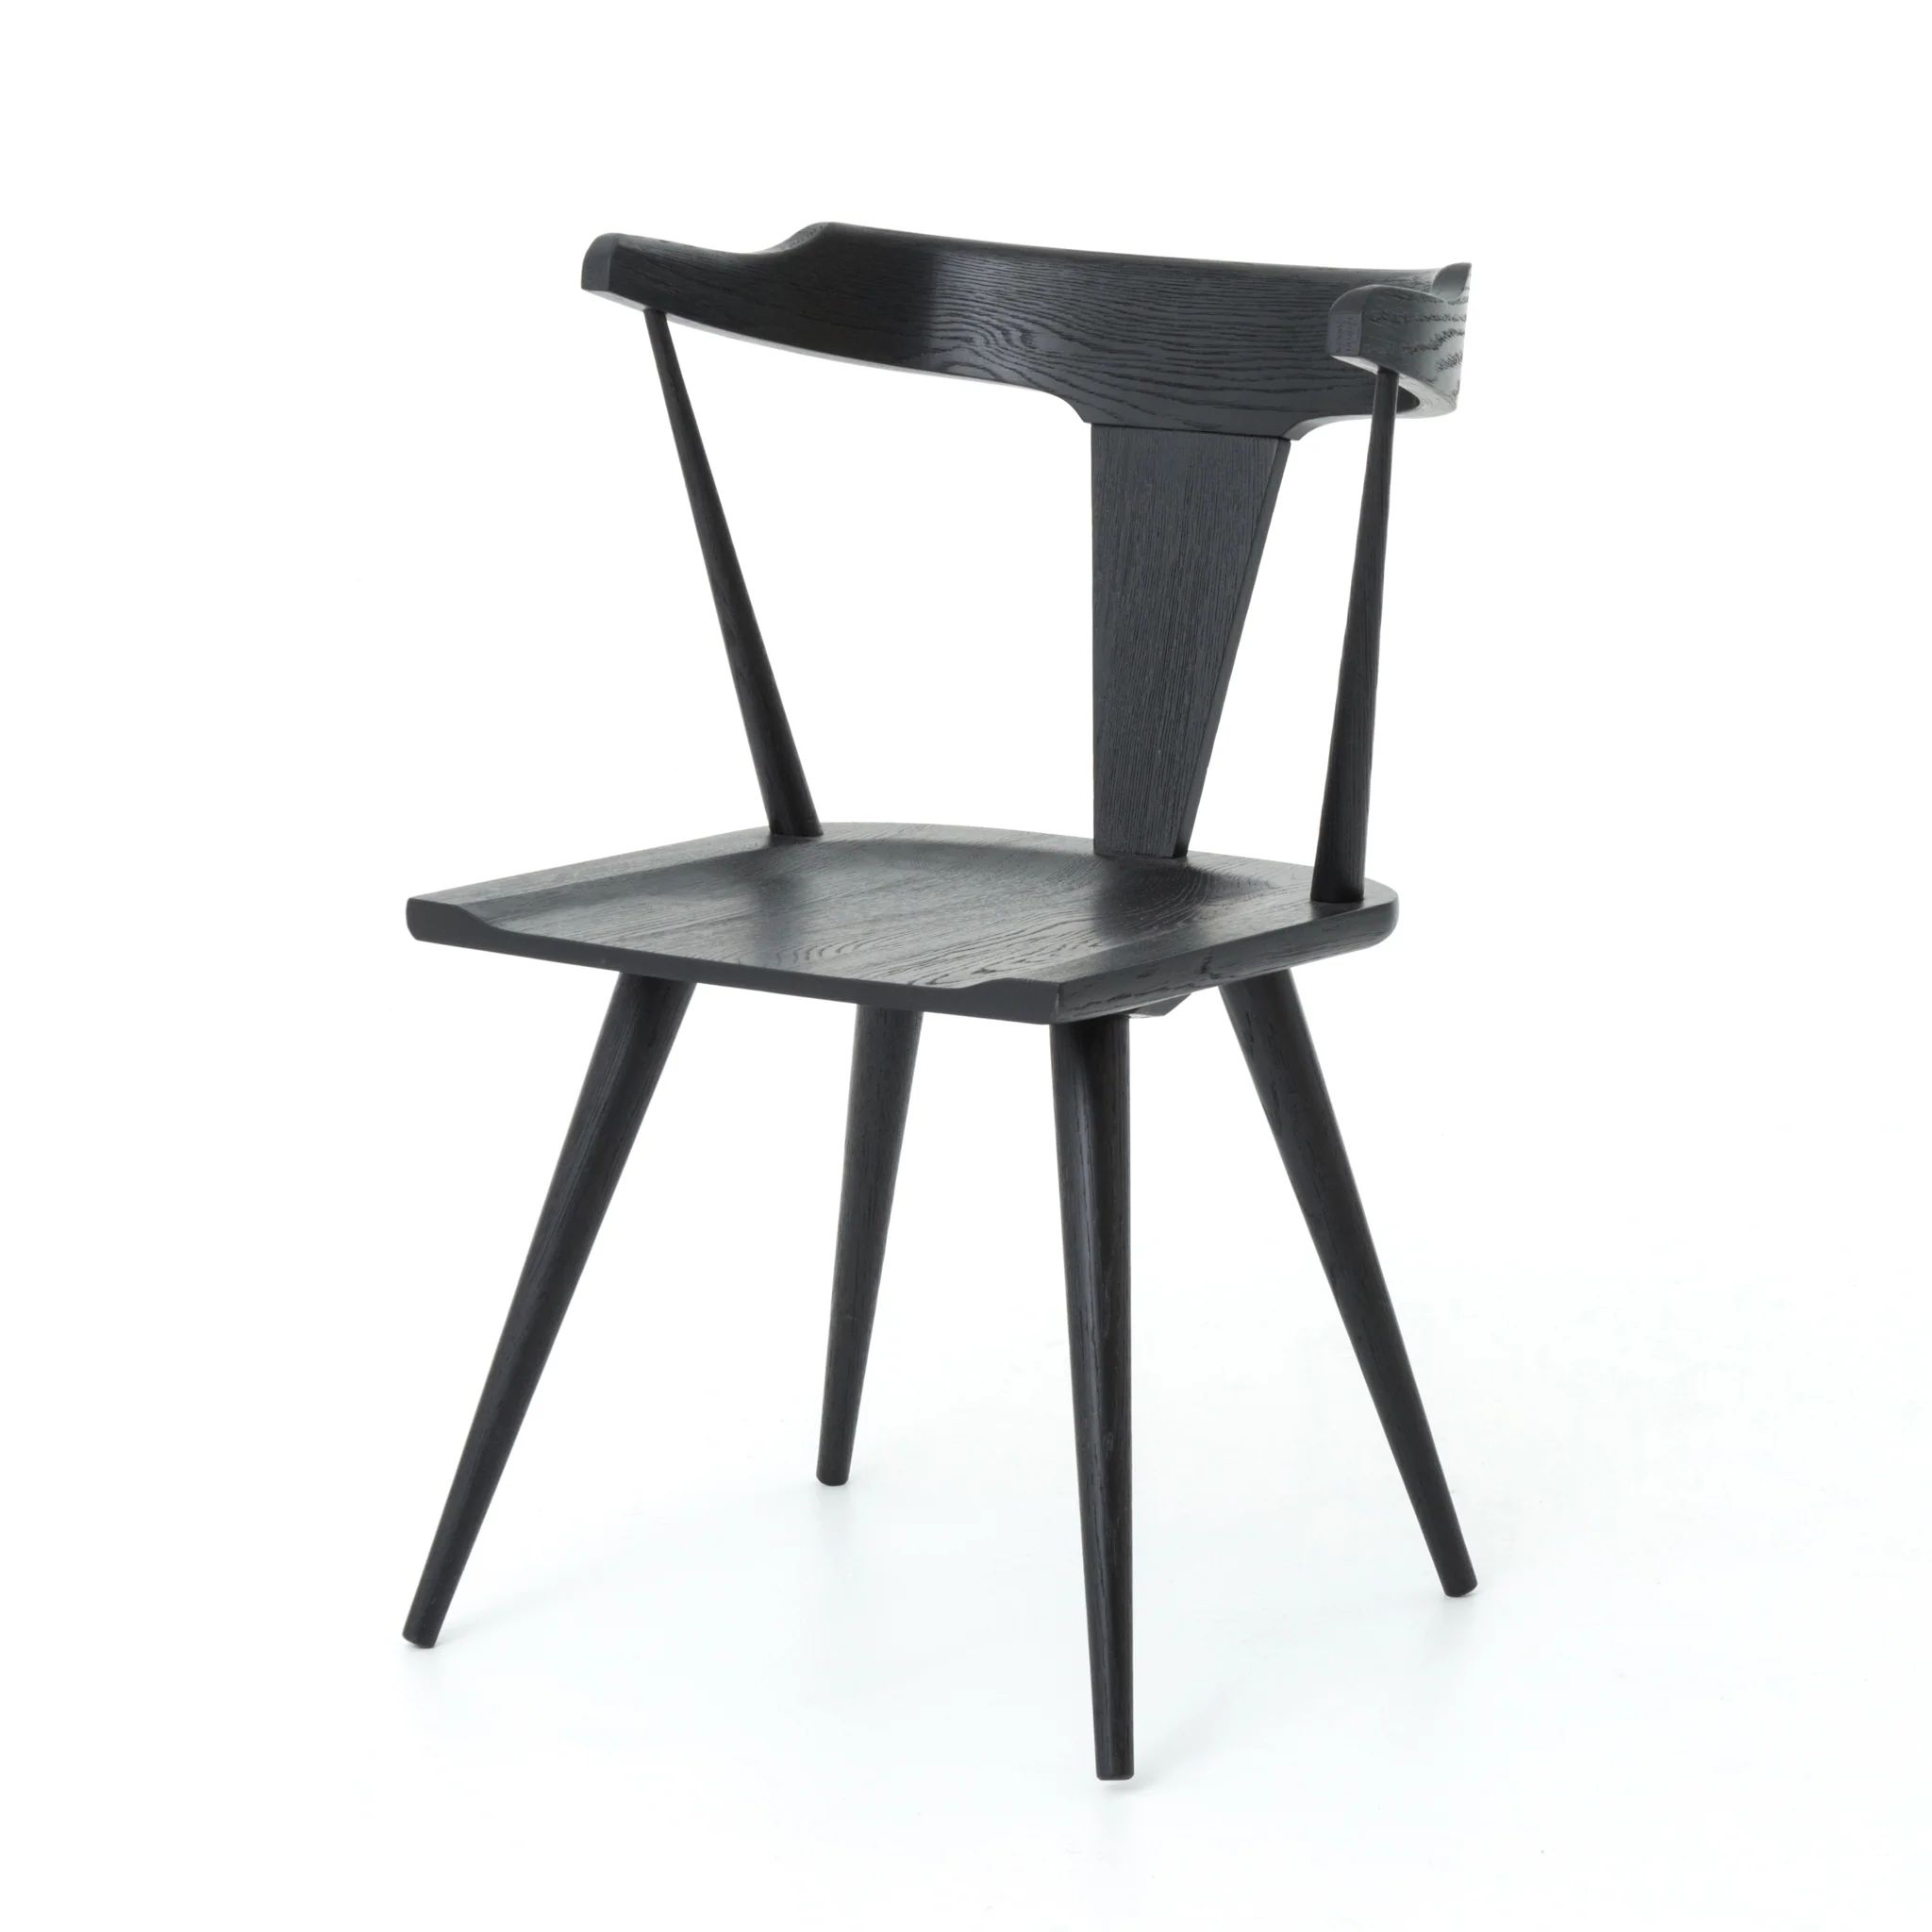 Ripley Dining Chair in Black Oak | Burke Decor